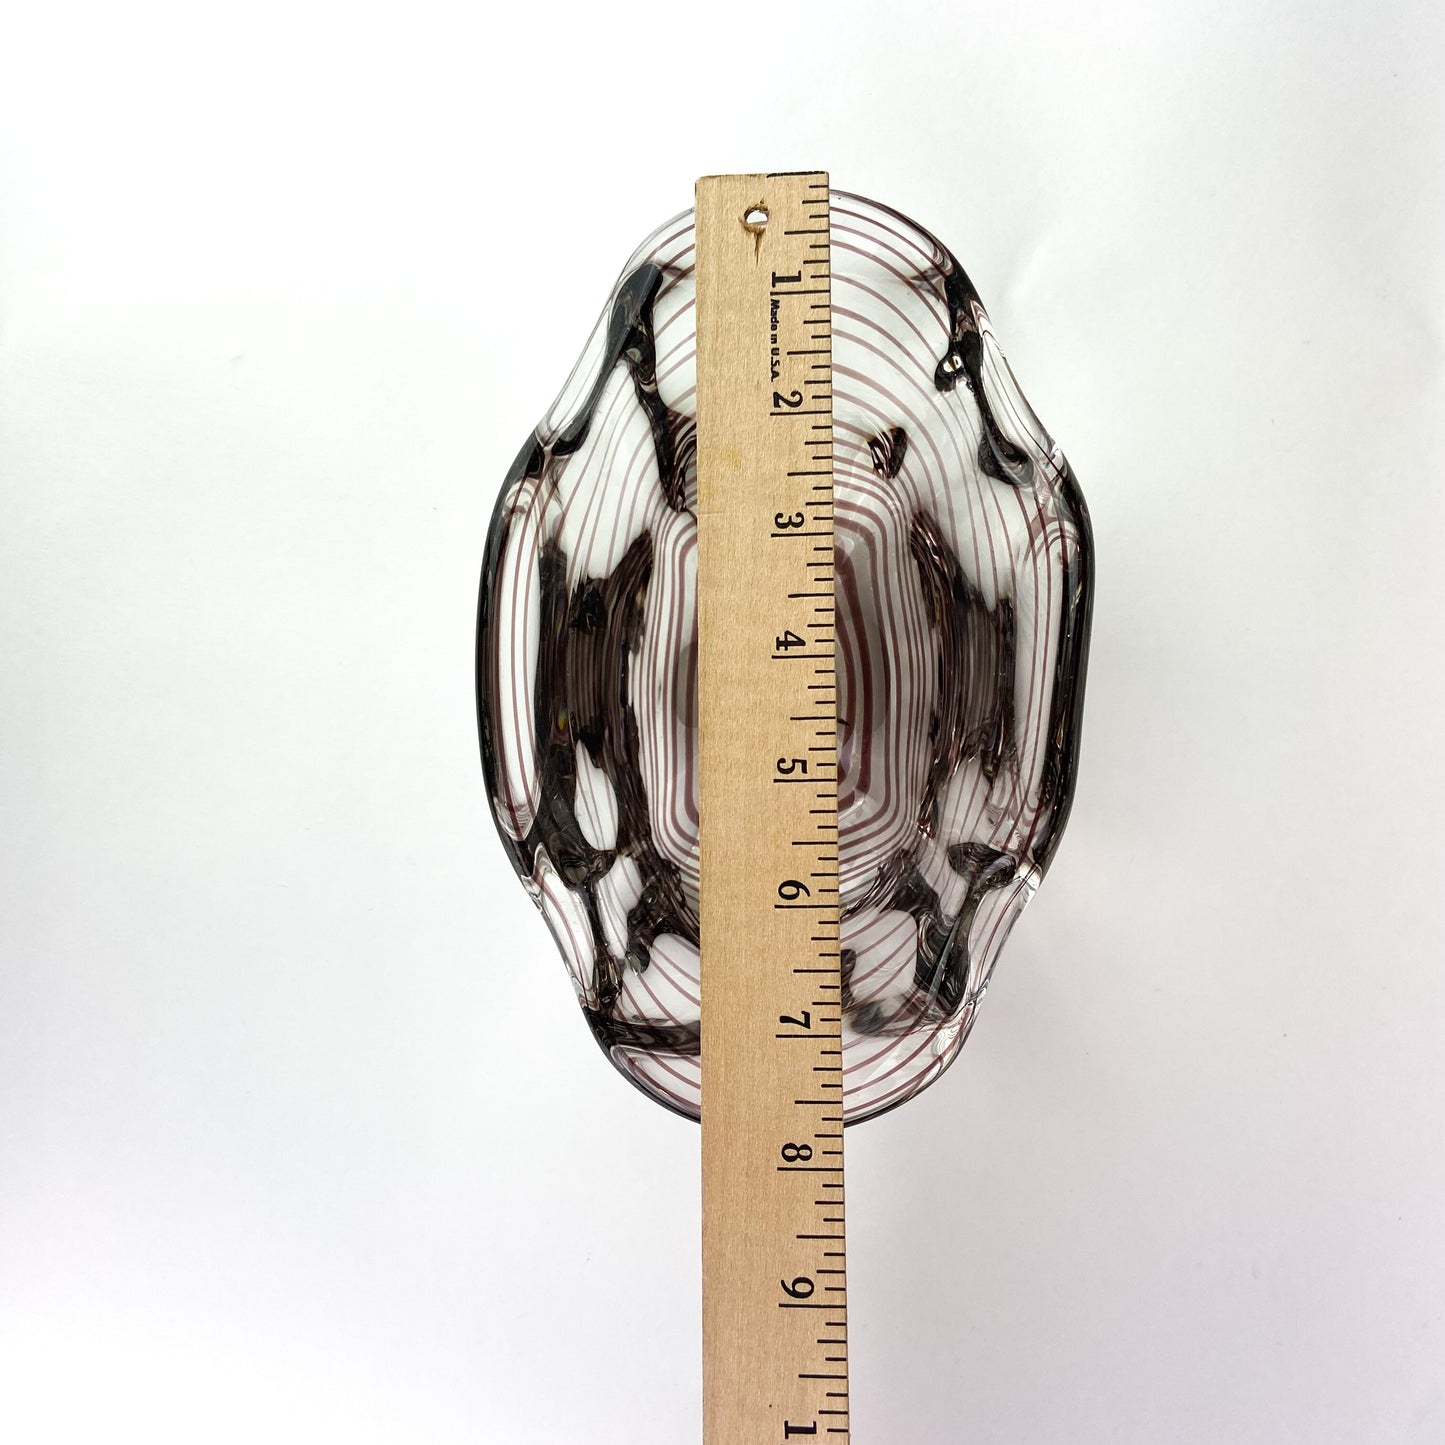 A.B. KALMAR Glasbruk Amethyst Glass Bowl #O712